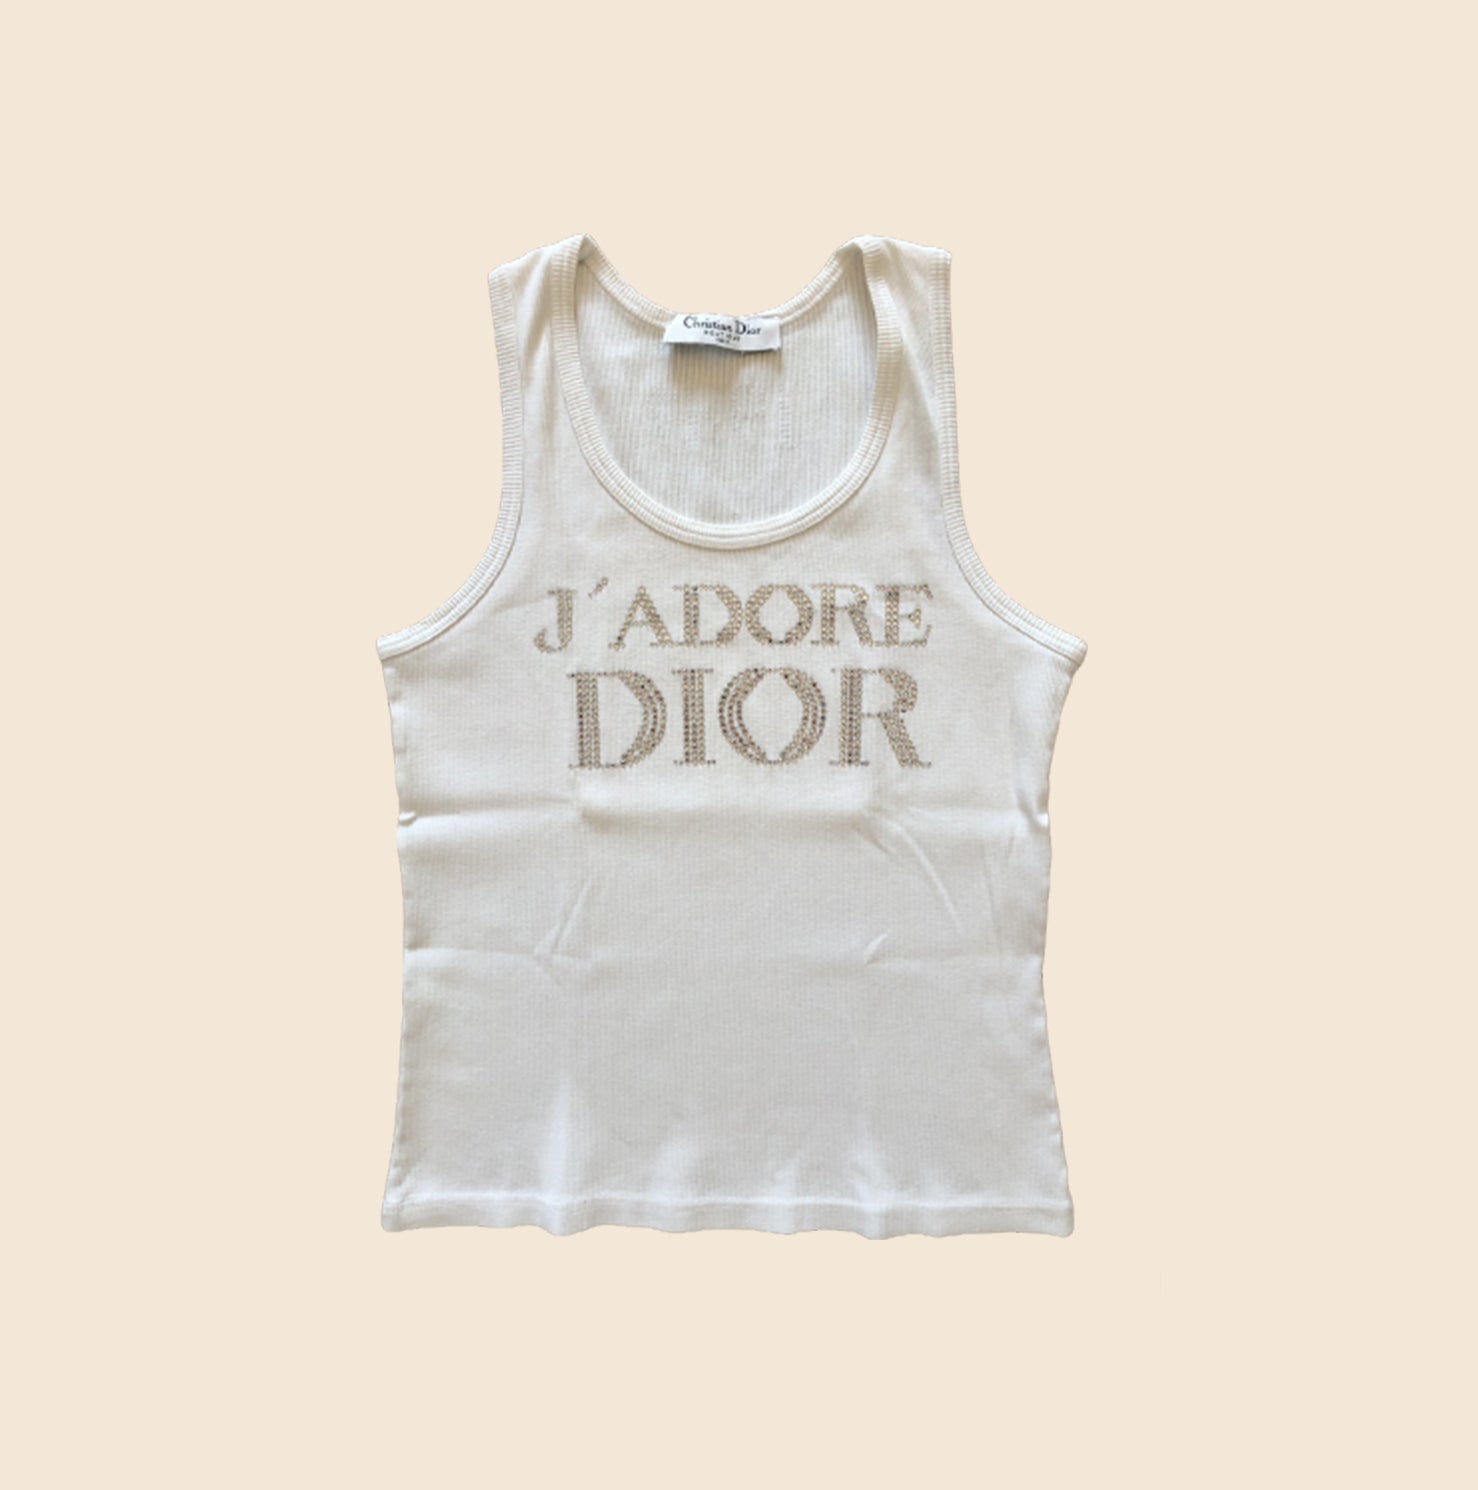 2000 Christian Dior crop top  Crop tops, Dior tops, Clothes design